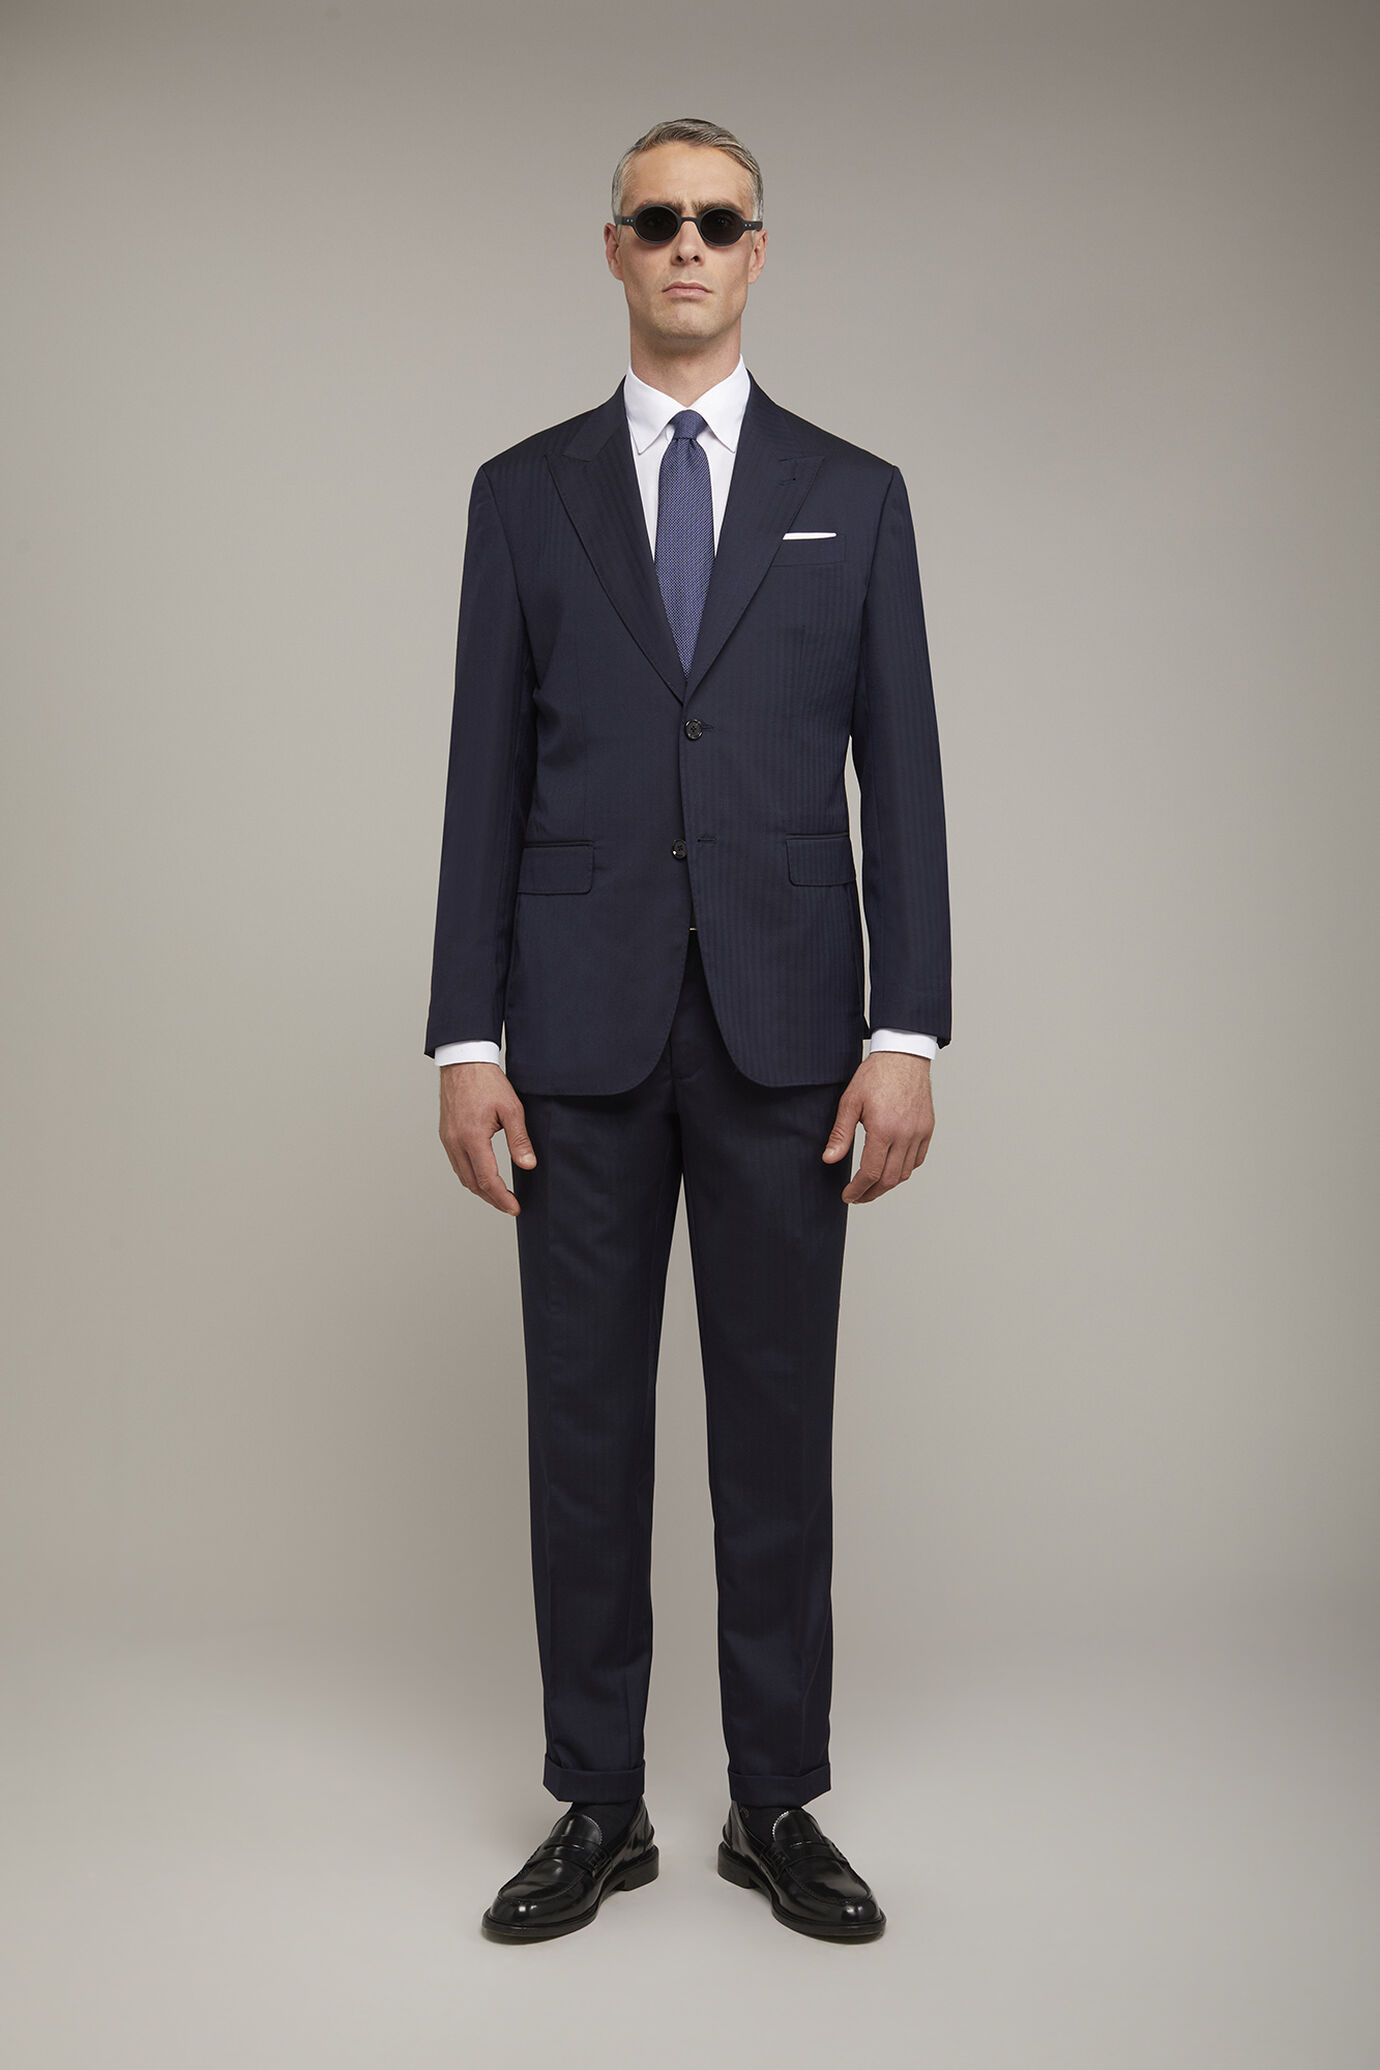 Men's single-breasted Wool Blend suit with herringbone pattern regular fit